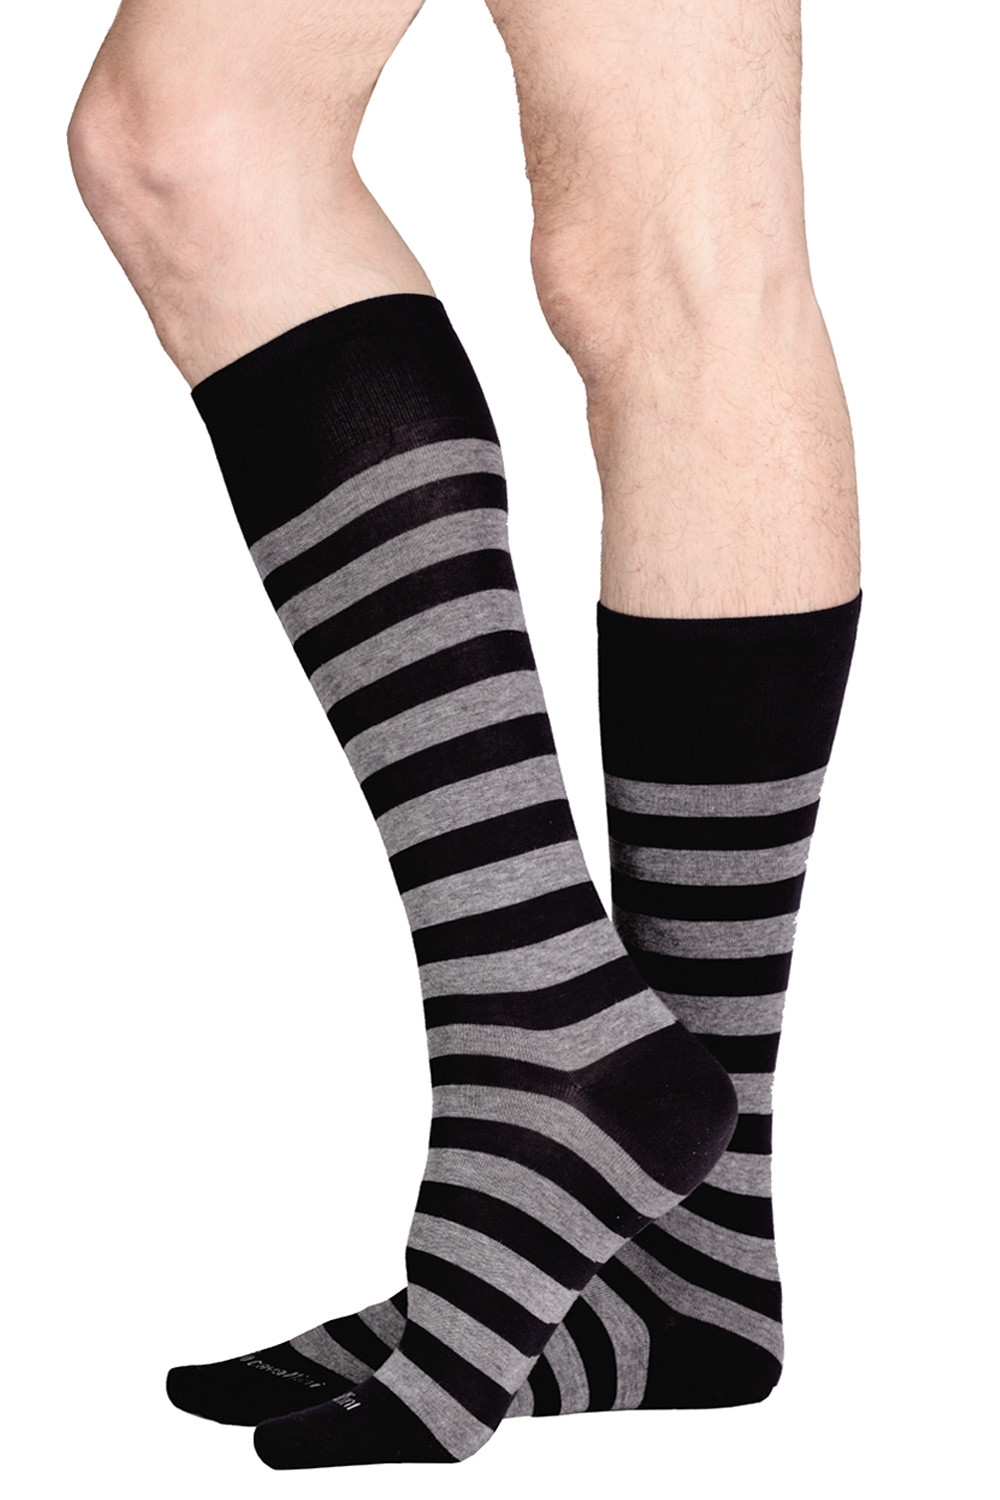 Stoic Merino Trekking Crew Socks Stripes - Calcetines de trekking